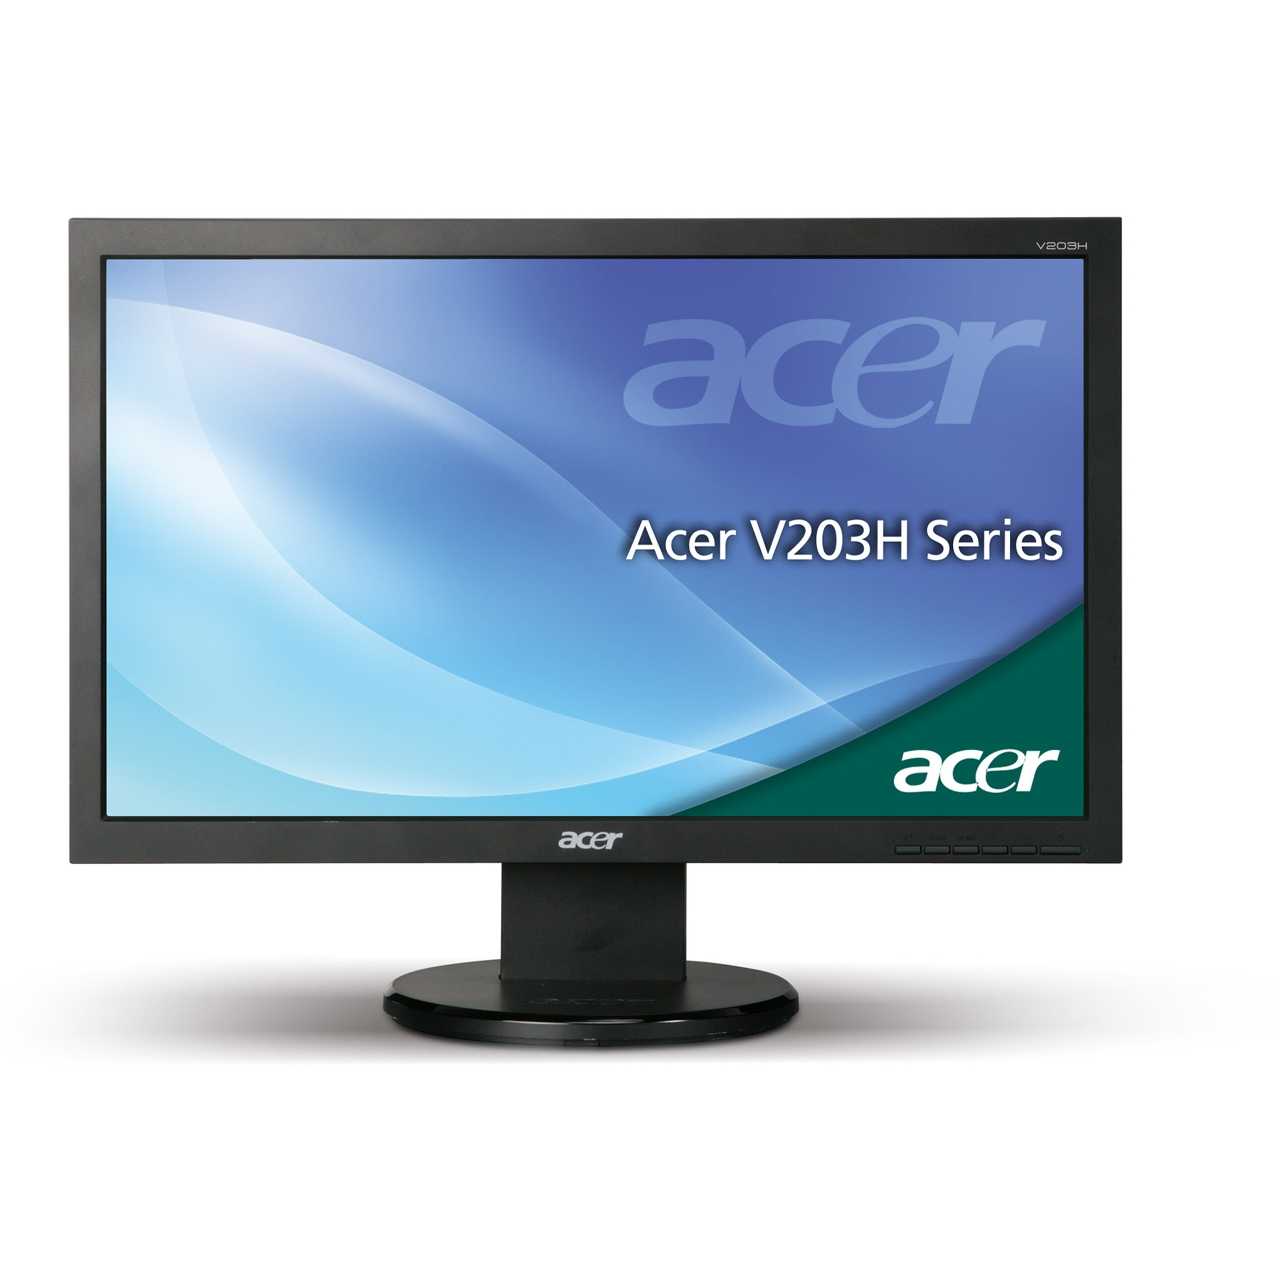 Acer v196wlb (черный) - купить , скидки, цена, отзывы, обзор, характеристики - мониторы